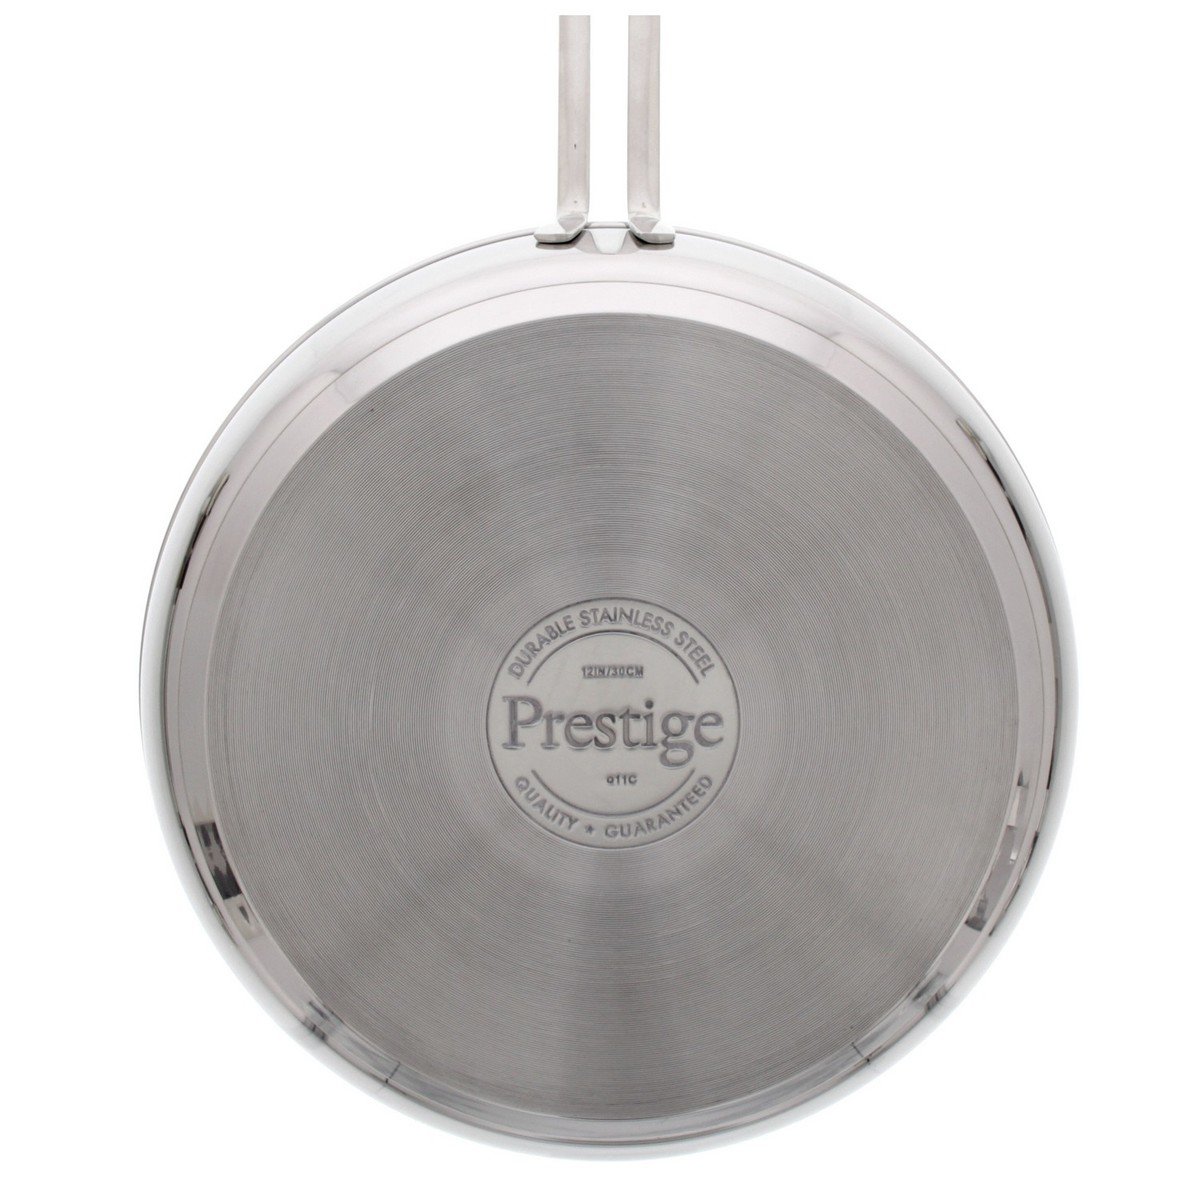 Prestige Infinity Stainless Steel Fry Pan, 18 cm, 77365